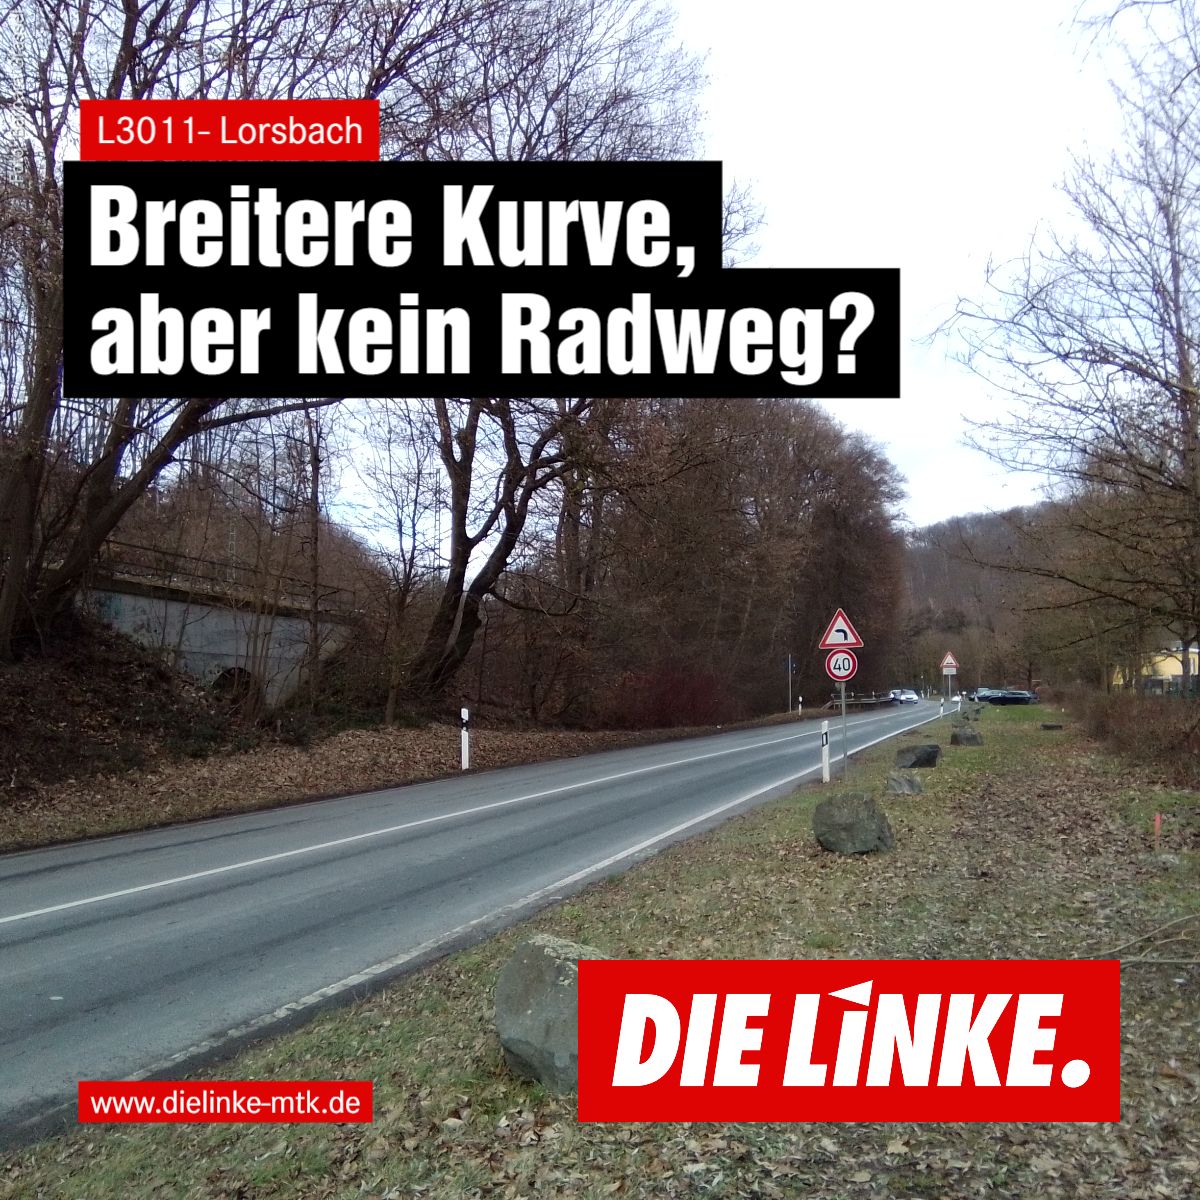 Das Bild zeigt ein Foto der Klärwerkskurve am Ortseingang von Lorsbach mit dem Schriftzug: Breitere Kurve, aber kein Radweg?